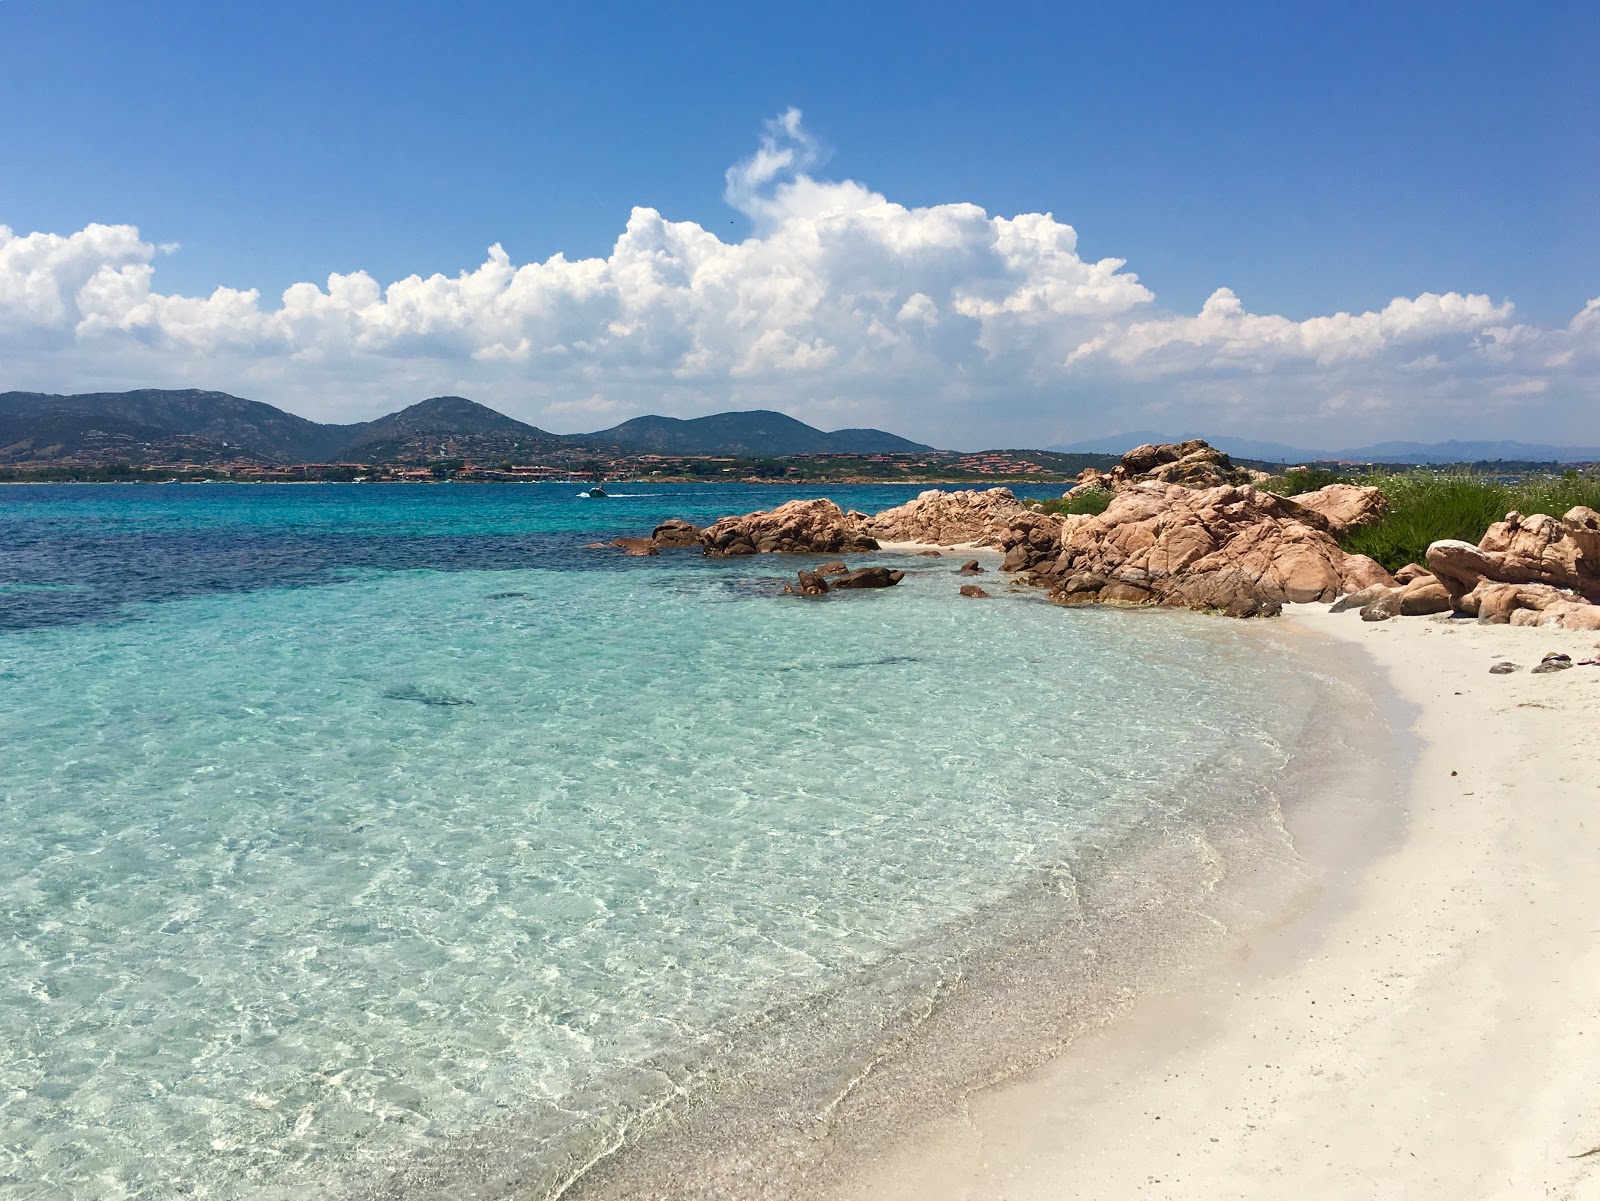 Foto af Spiaggia dell'Isola Piana med blåt rent vand overflade